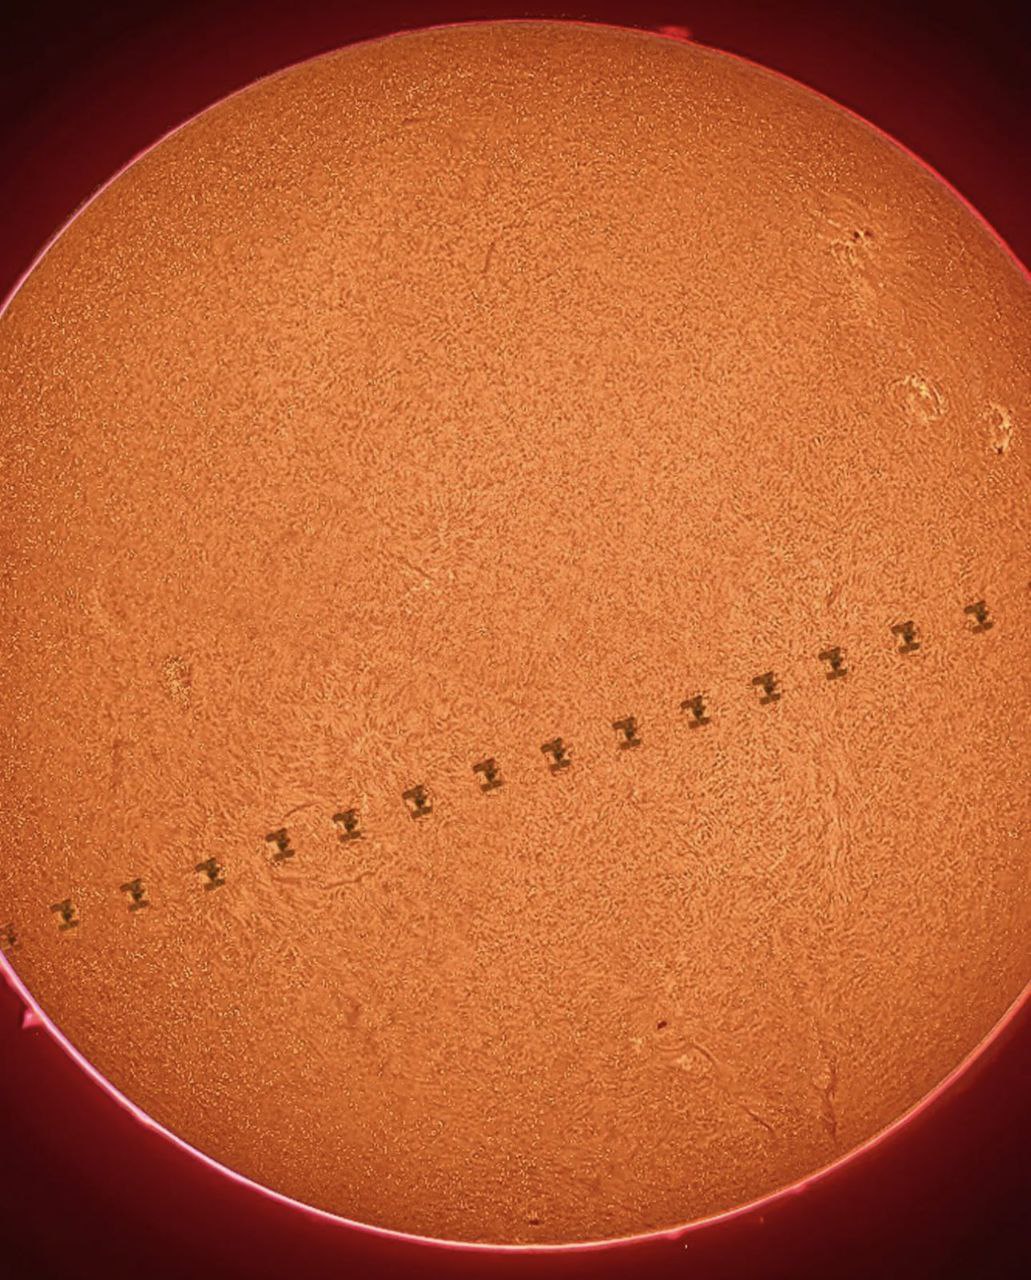 قابی از گذر ایستگاه فضایی از مقابل خورشید